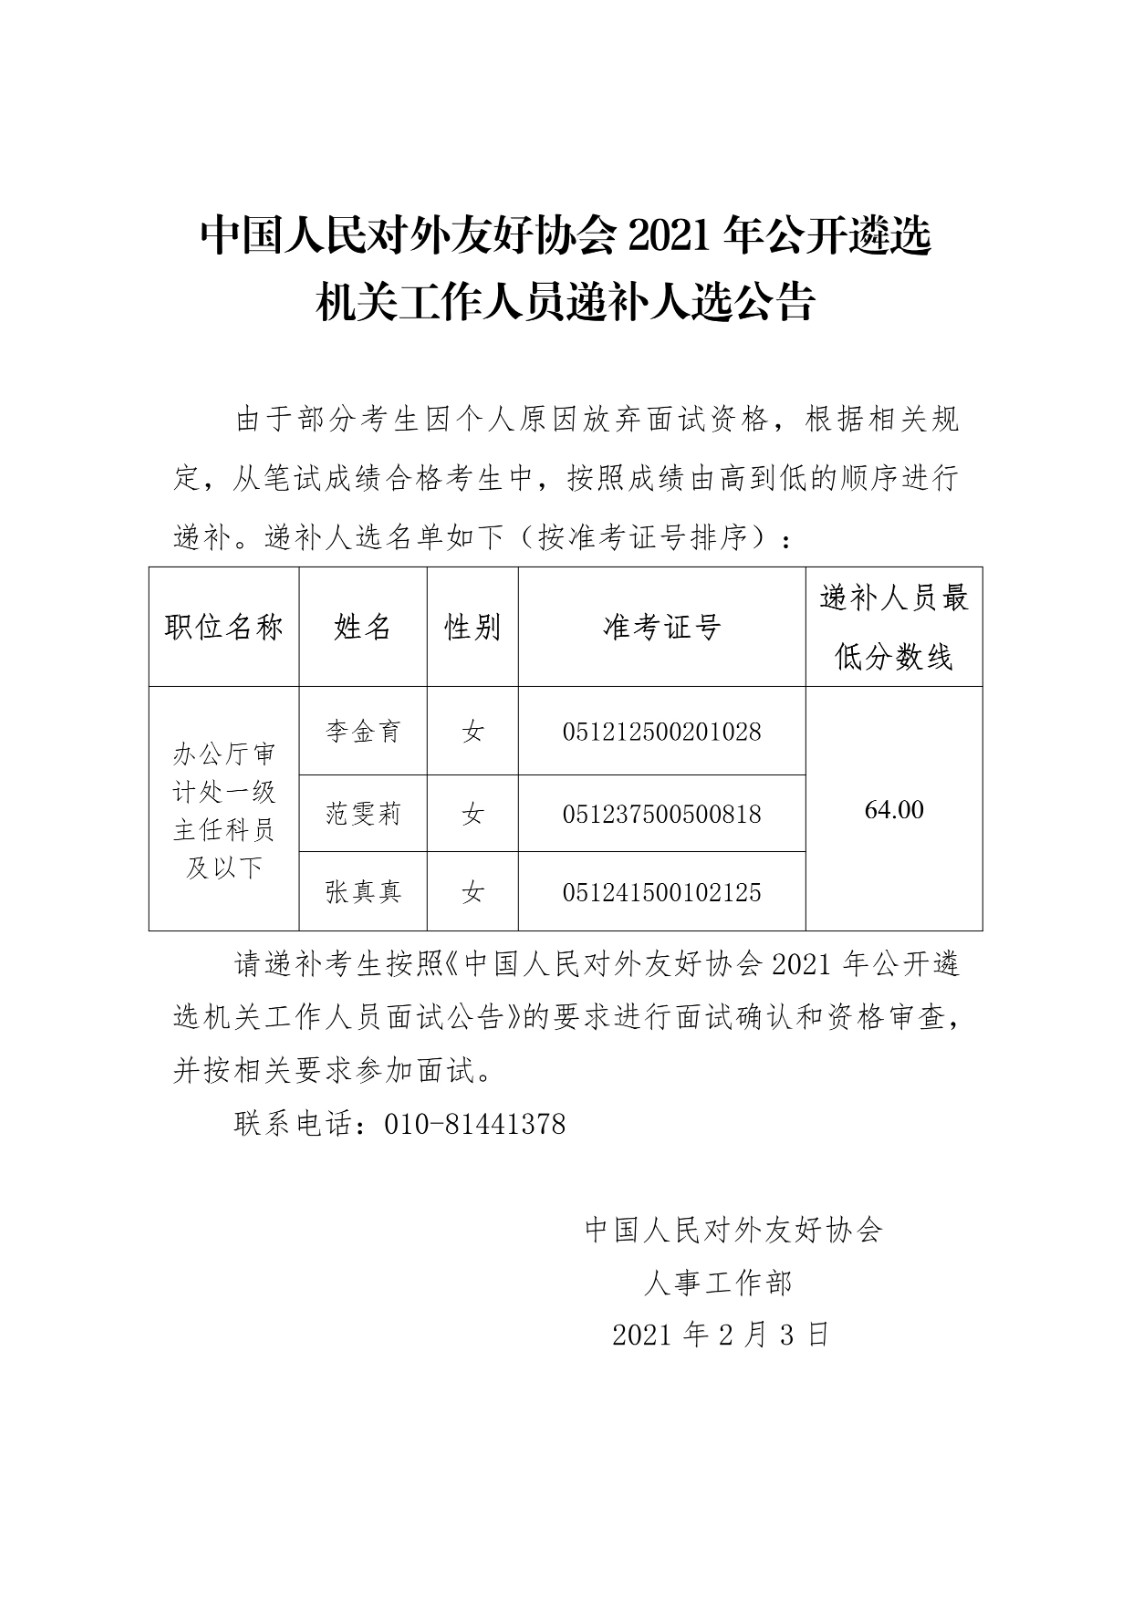 中国人民对外友好协会2021年公开遴选公务员递补公告_1.jpg